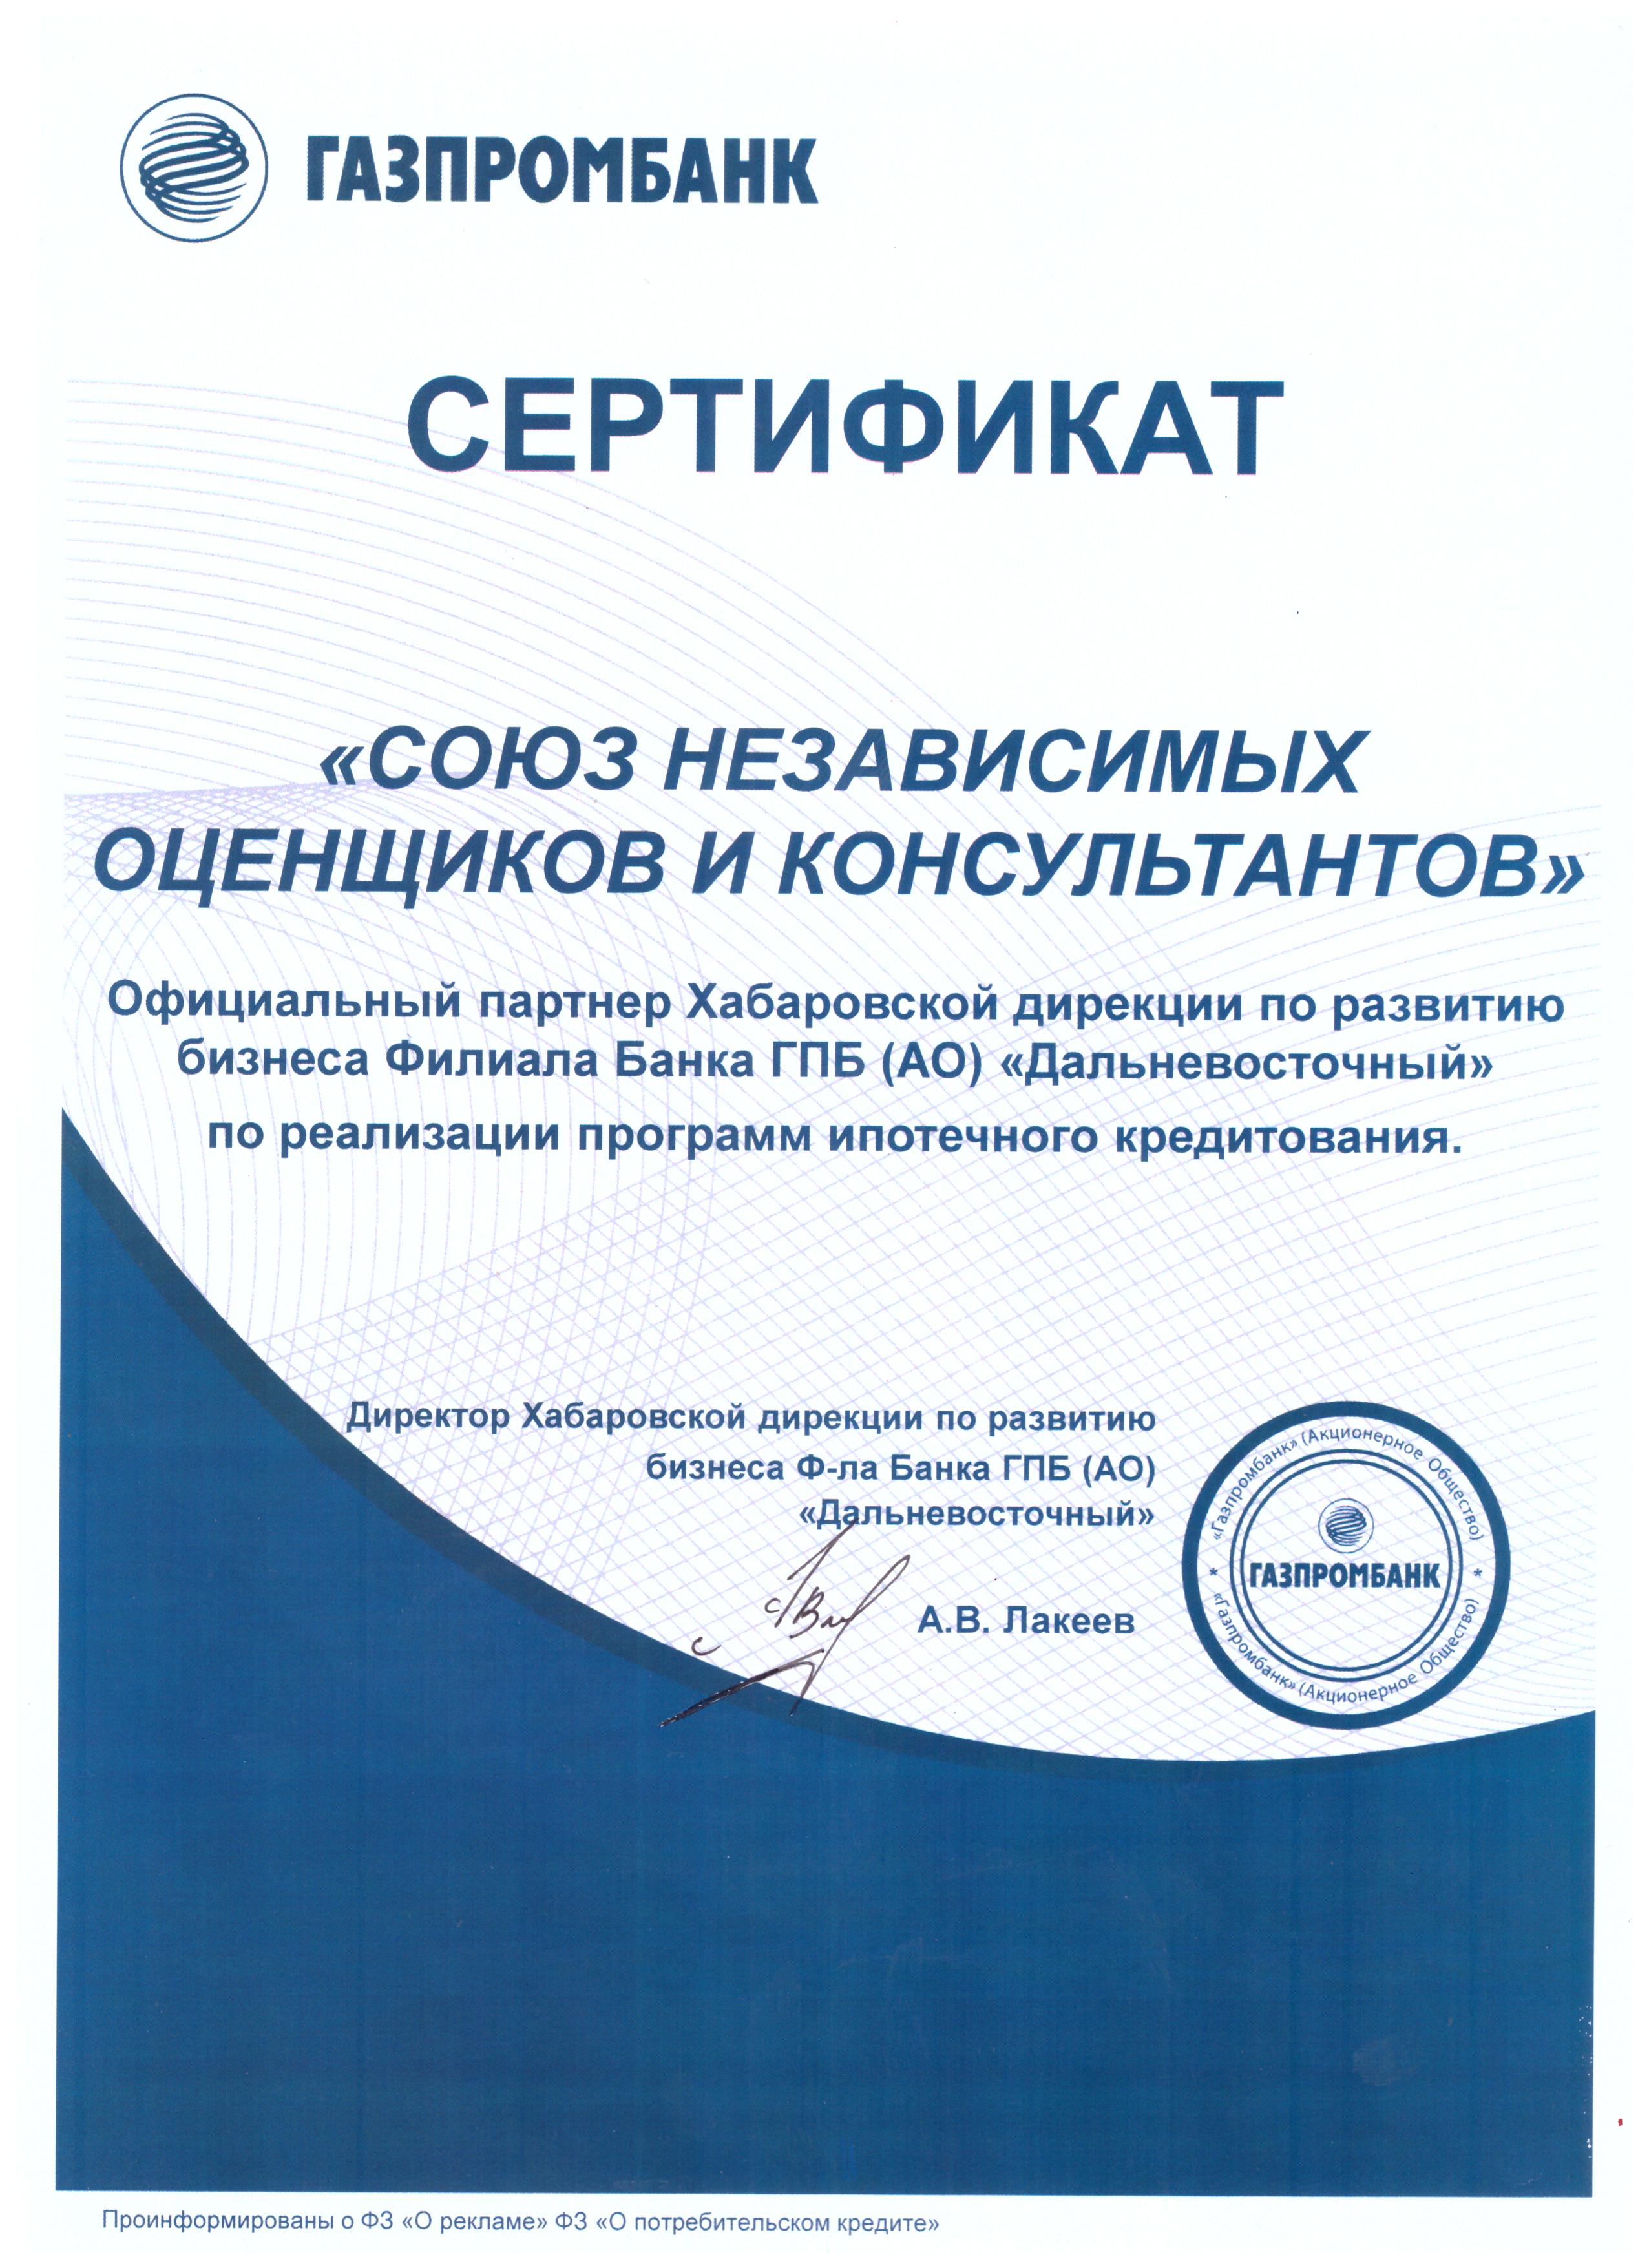 оценочная компания аккредитованная в Газпромбанке